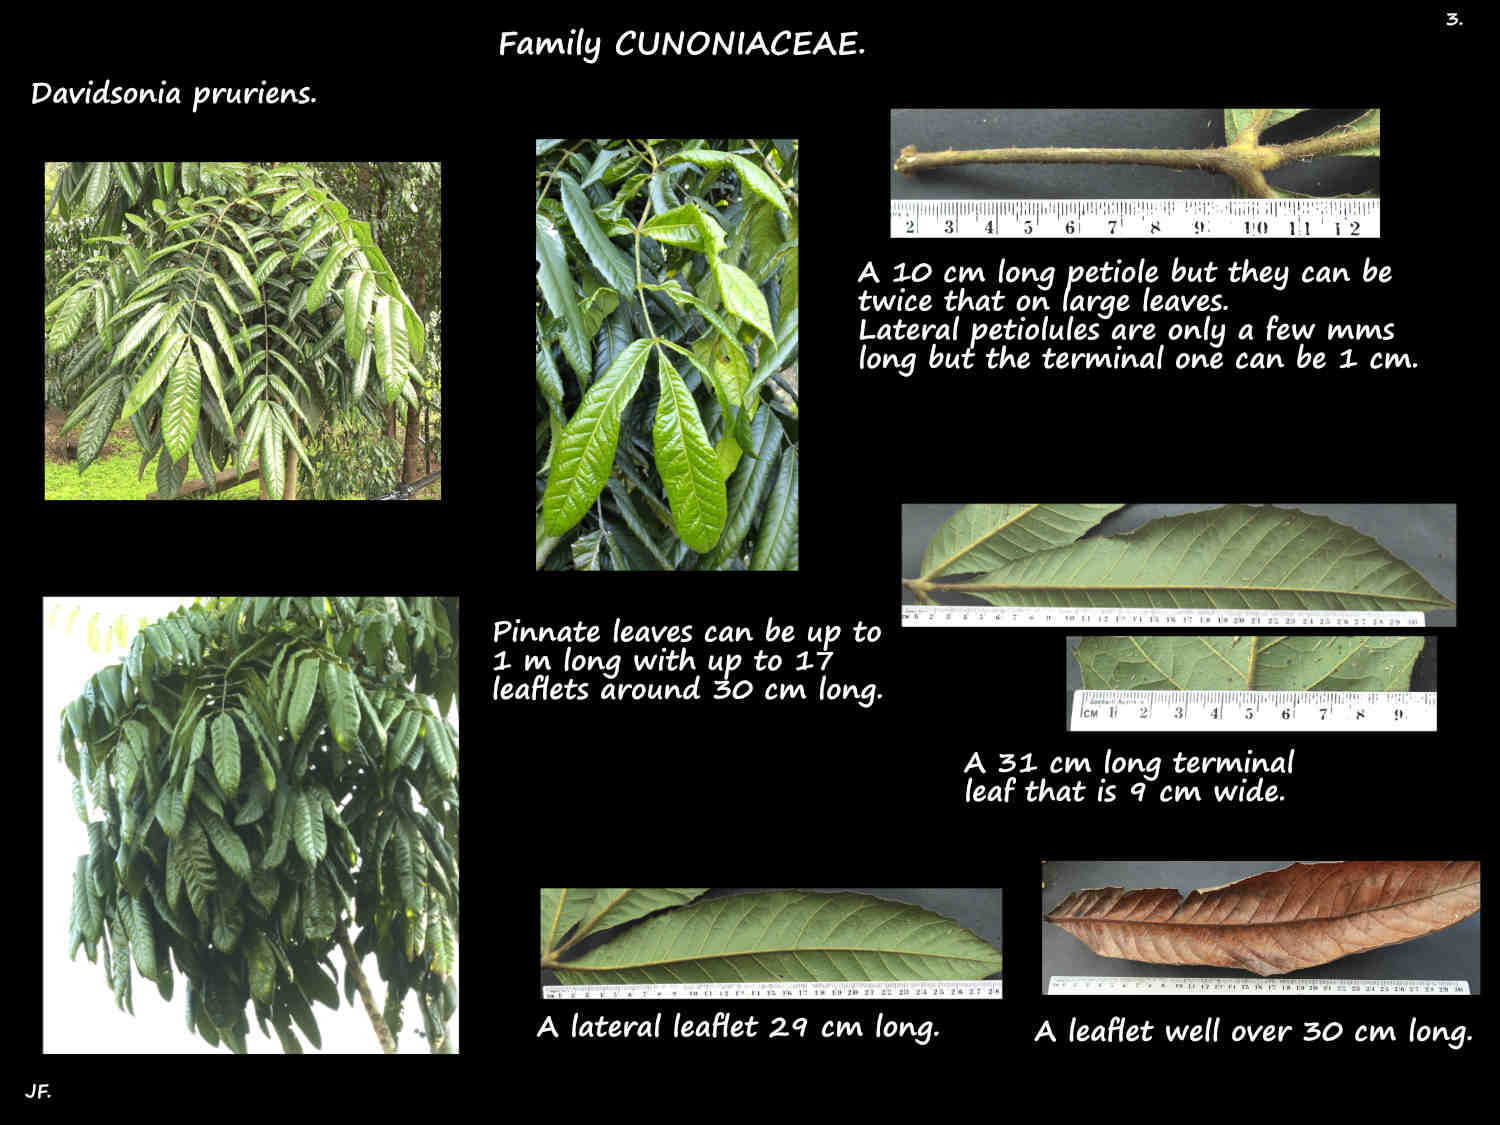 3 Large pinnate leaves of Davidsonia pruriens